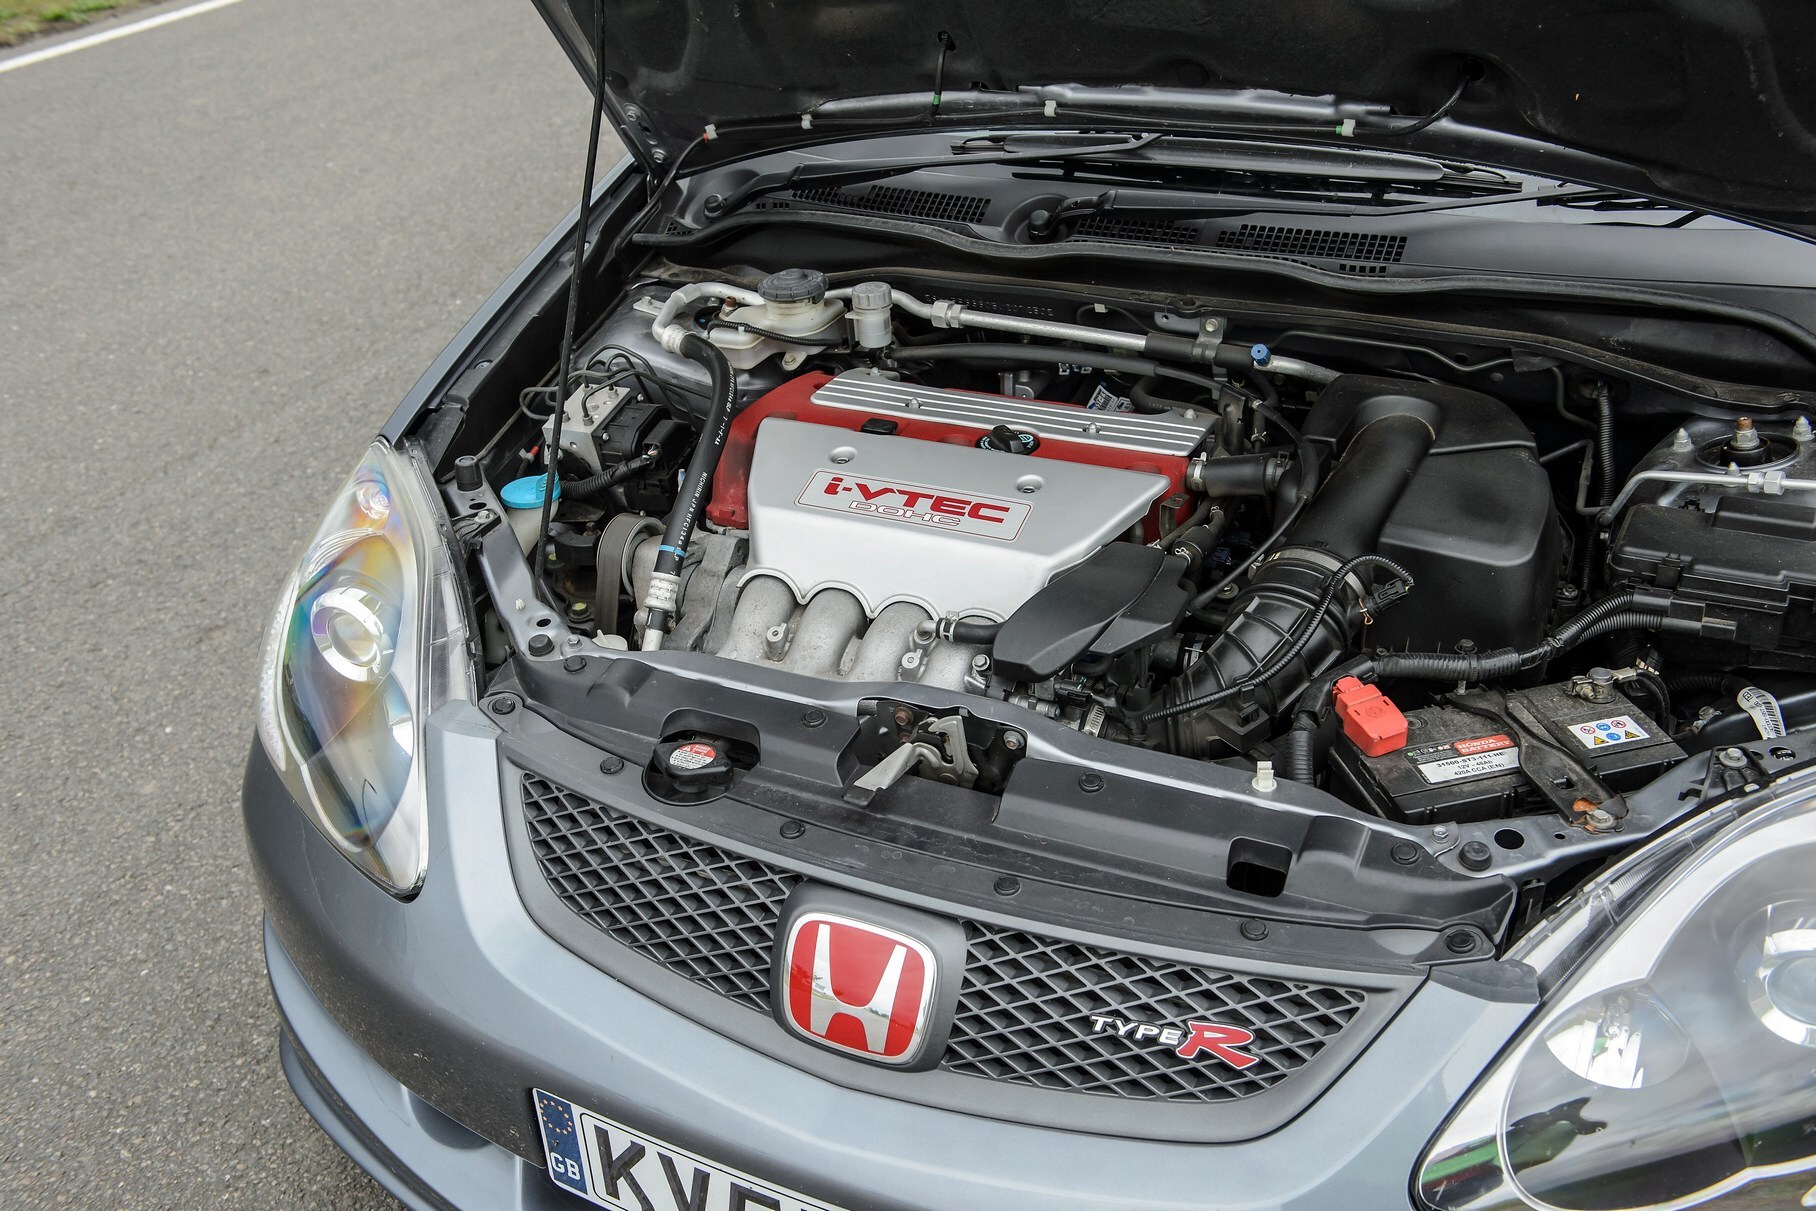 Двигатели Honda K-серии выпускаются с 2001 года и по сей день. Сверхудачное семейство включает как чисто «гражданские» моторы, так и спортивные версии с высочайшим уровнем форсировки. Все они имеют 16-клапанную головку и систему изменения фаз газораспределения i-VTEC, но отличаются массой важных нюансов.